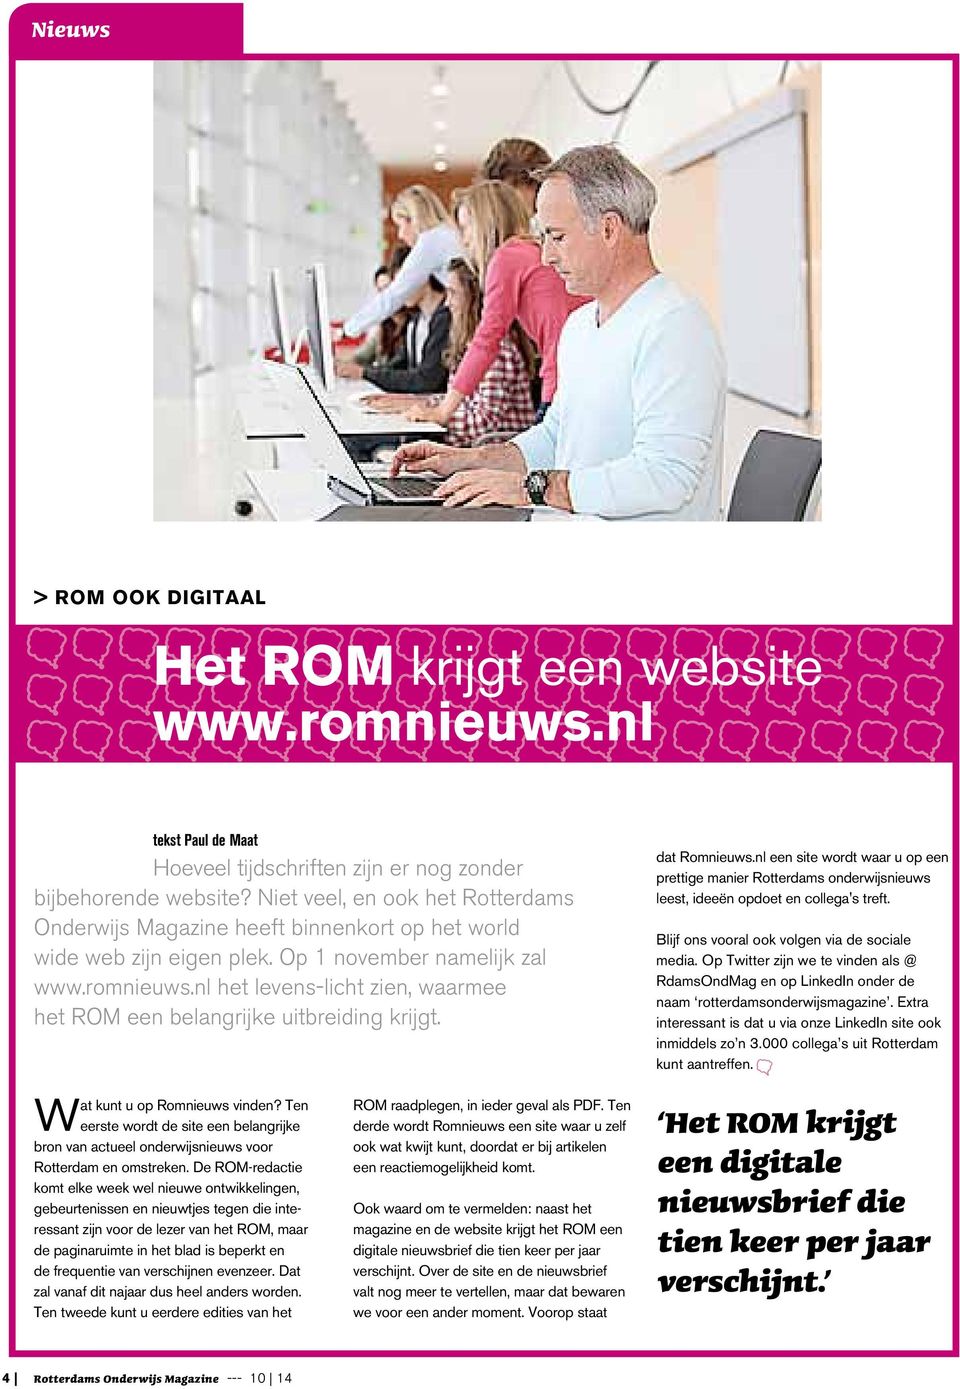 Niet veel, en ook het Rotterdams Onderwijs Magazine heeft binnenkort op het world wide web zijn eigen plek. Op 1 november namelijk zal www.romnieuws.